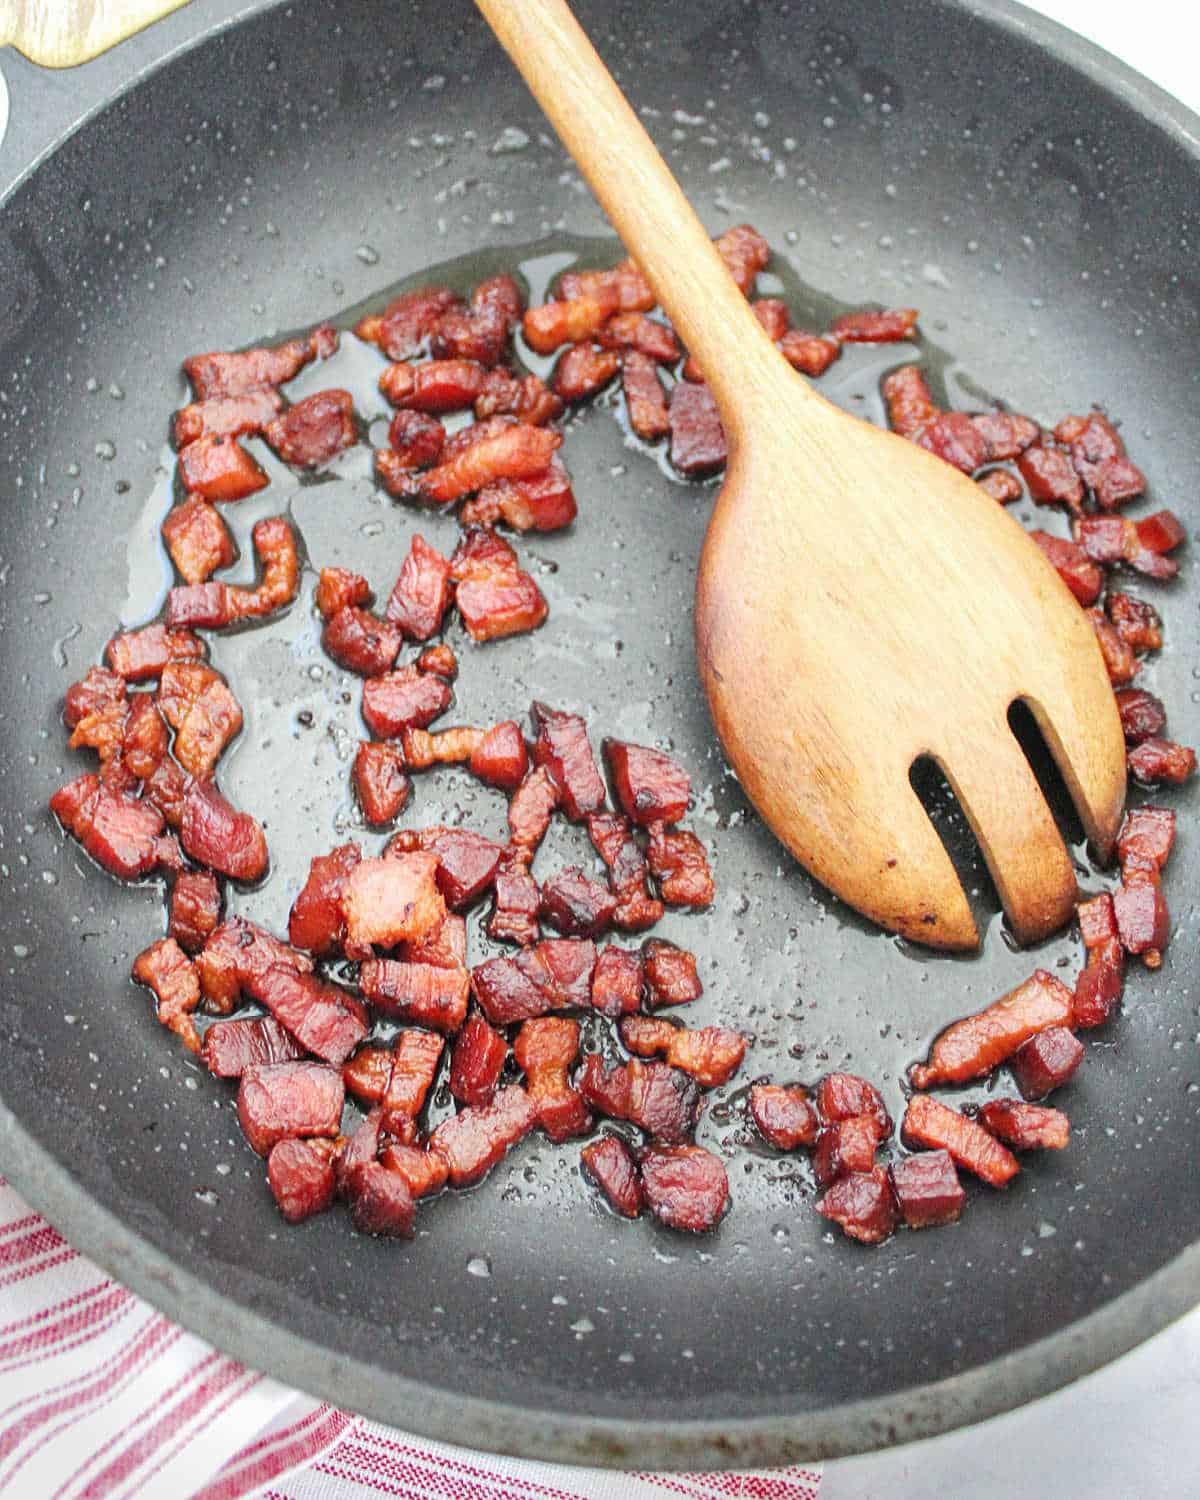 Bacon crispy bits in a dark skillet. Wooden spoon.